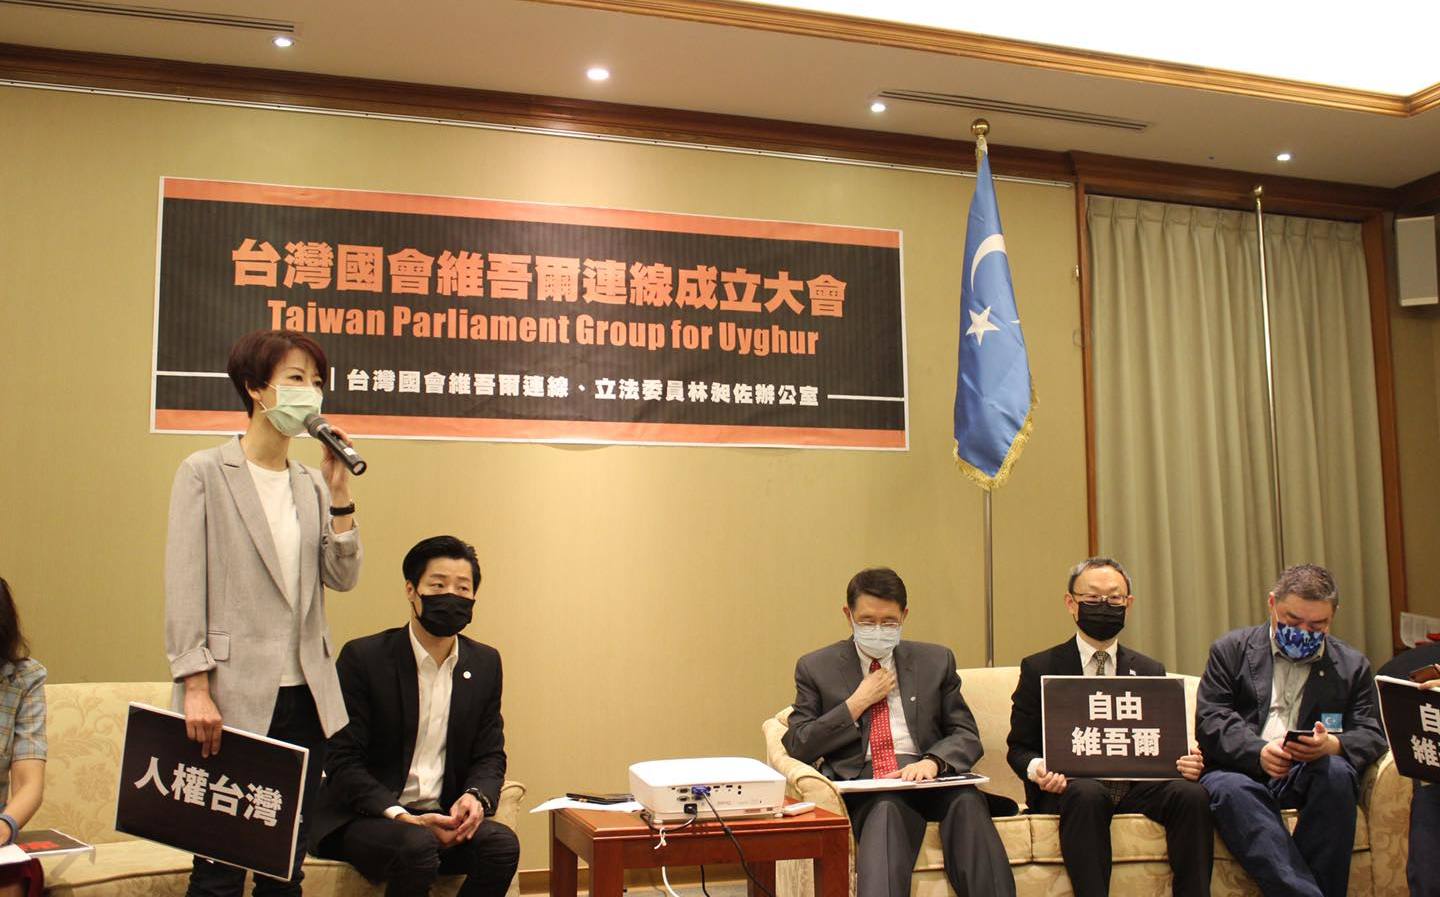 30位立委加入  台灣國會維吾爾連線今天成立 | 政治 | 新頭殼 Ne